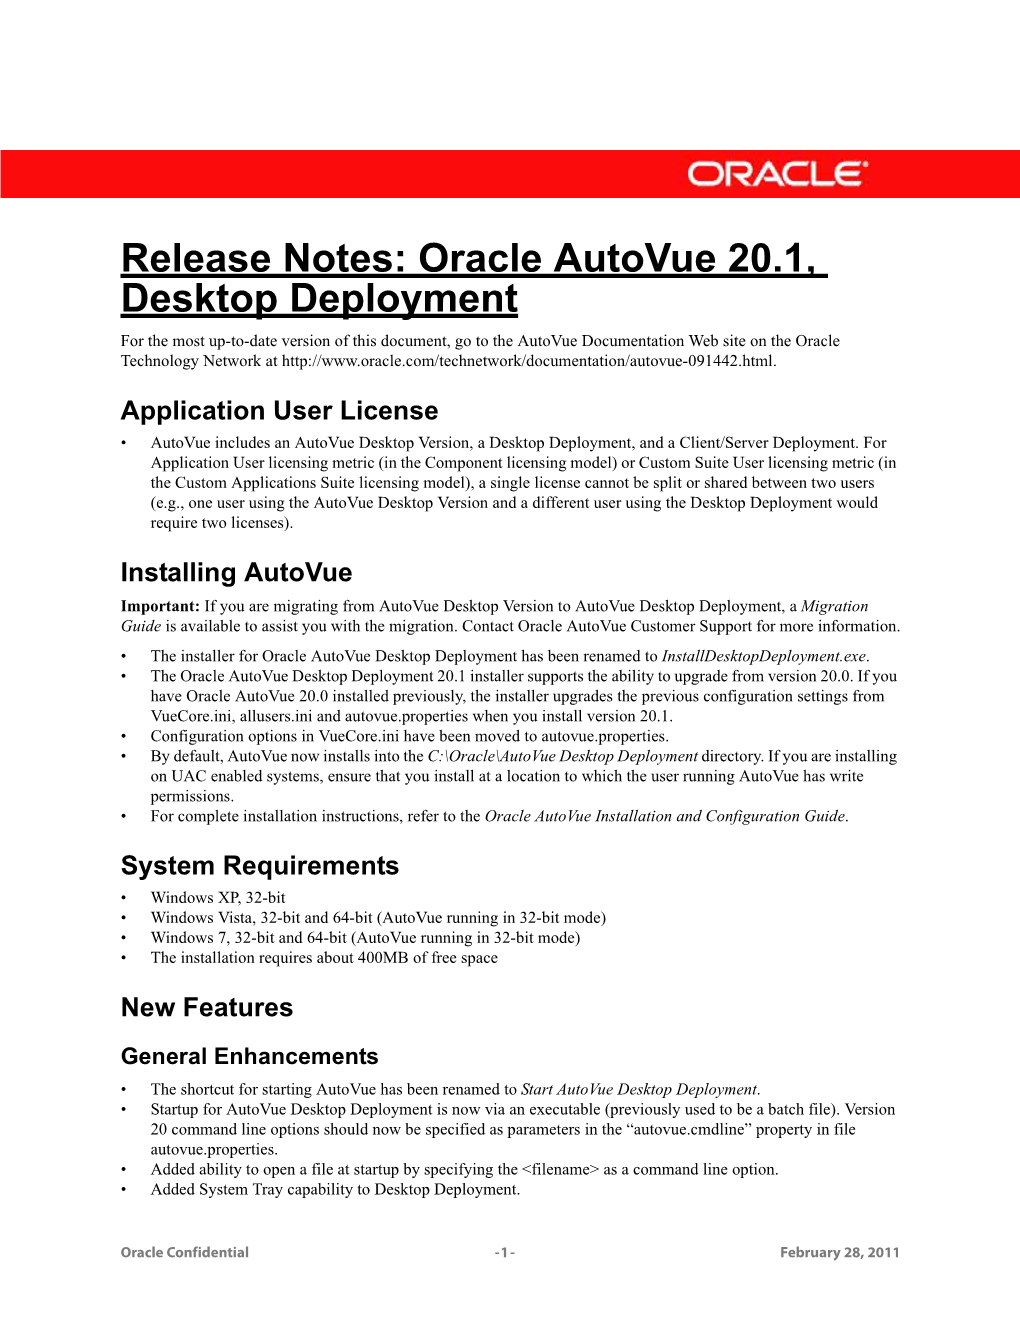 Oracle Autovue 20.1, Desktop Deployment Release Notes